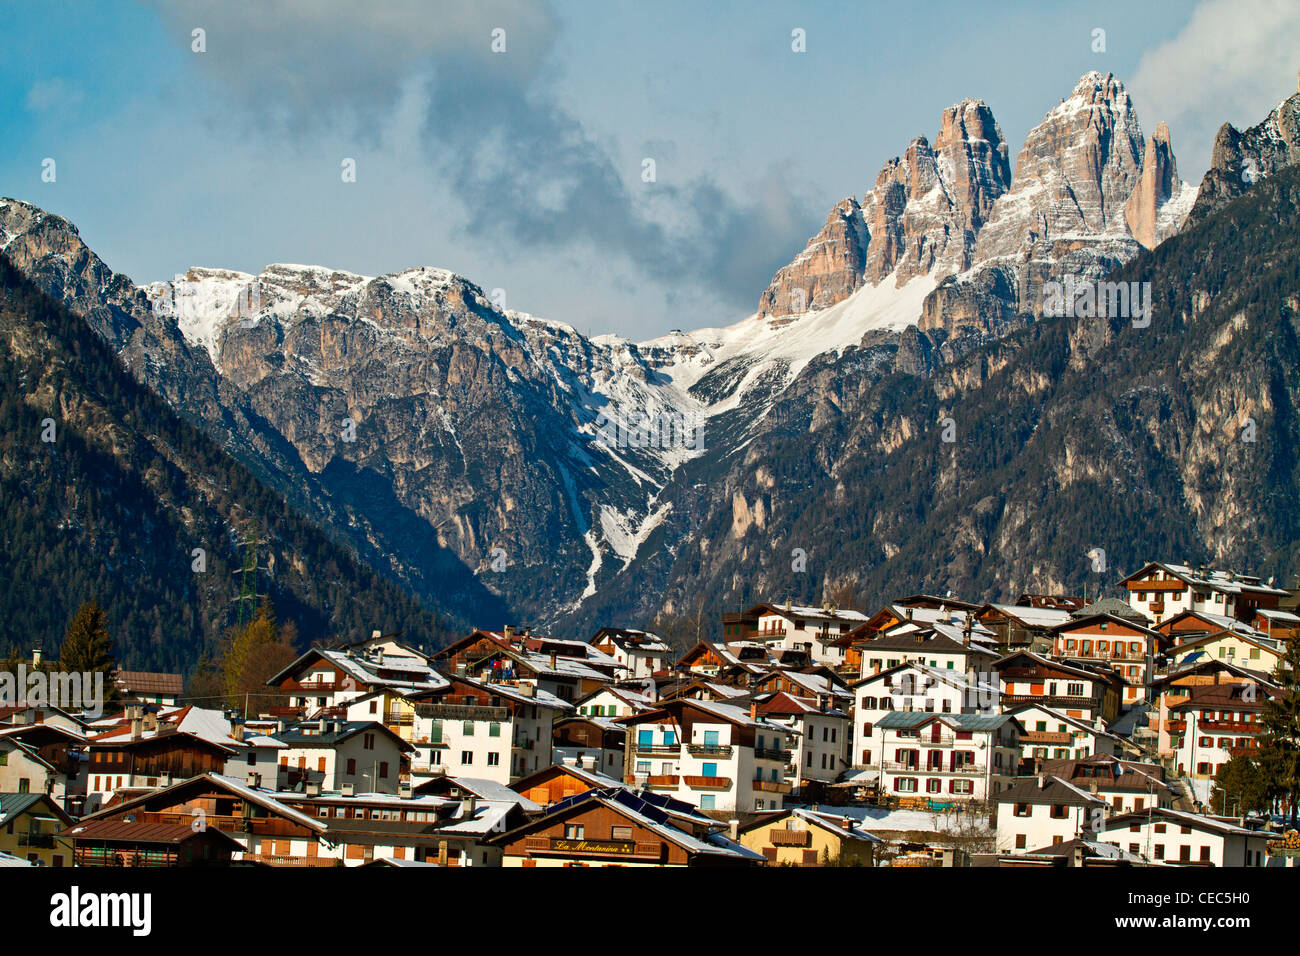 Auronzo di Cadore with Tre Cime di Lavaredo in the background, Dolomites, Italy Stock Photo